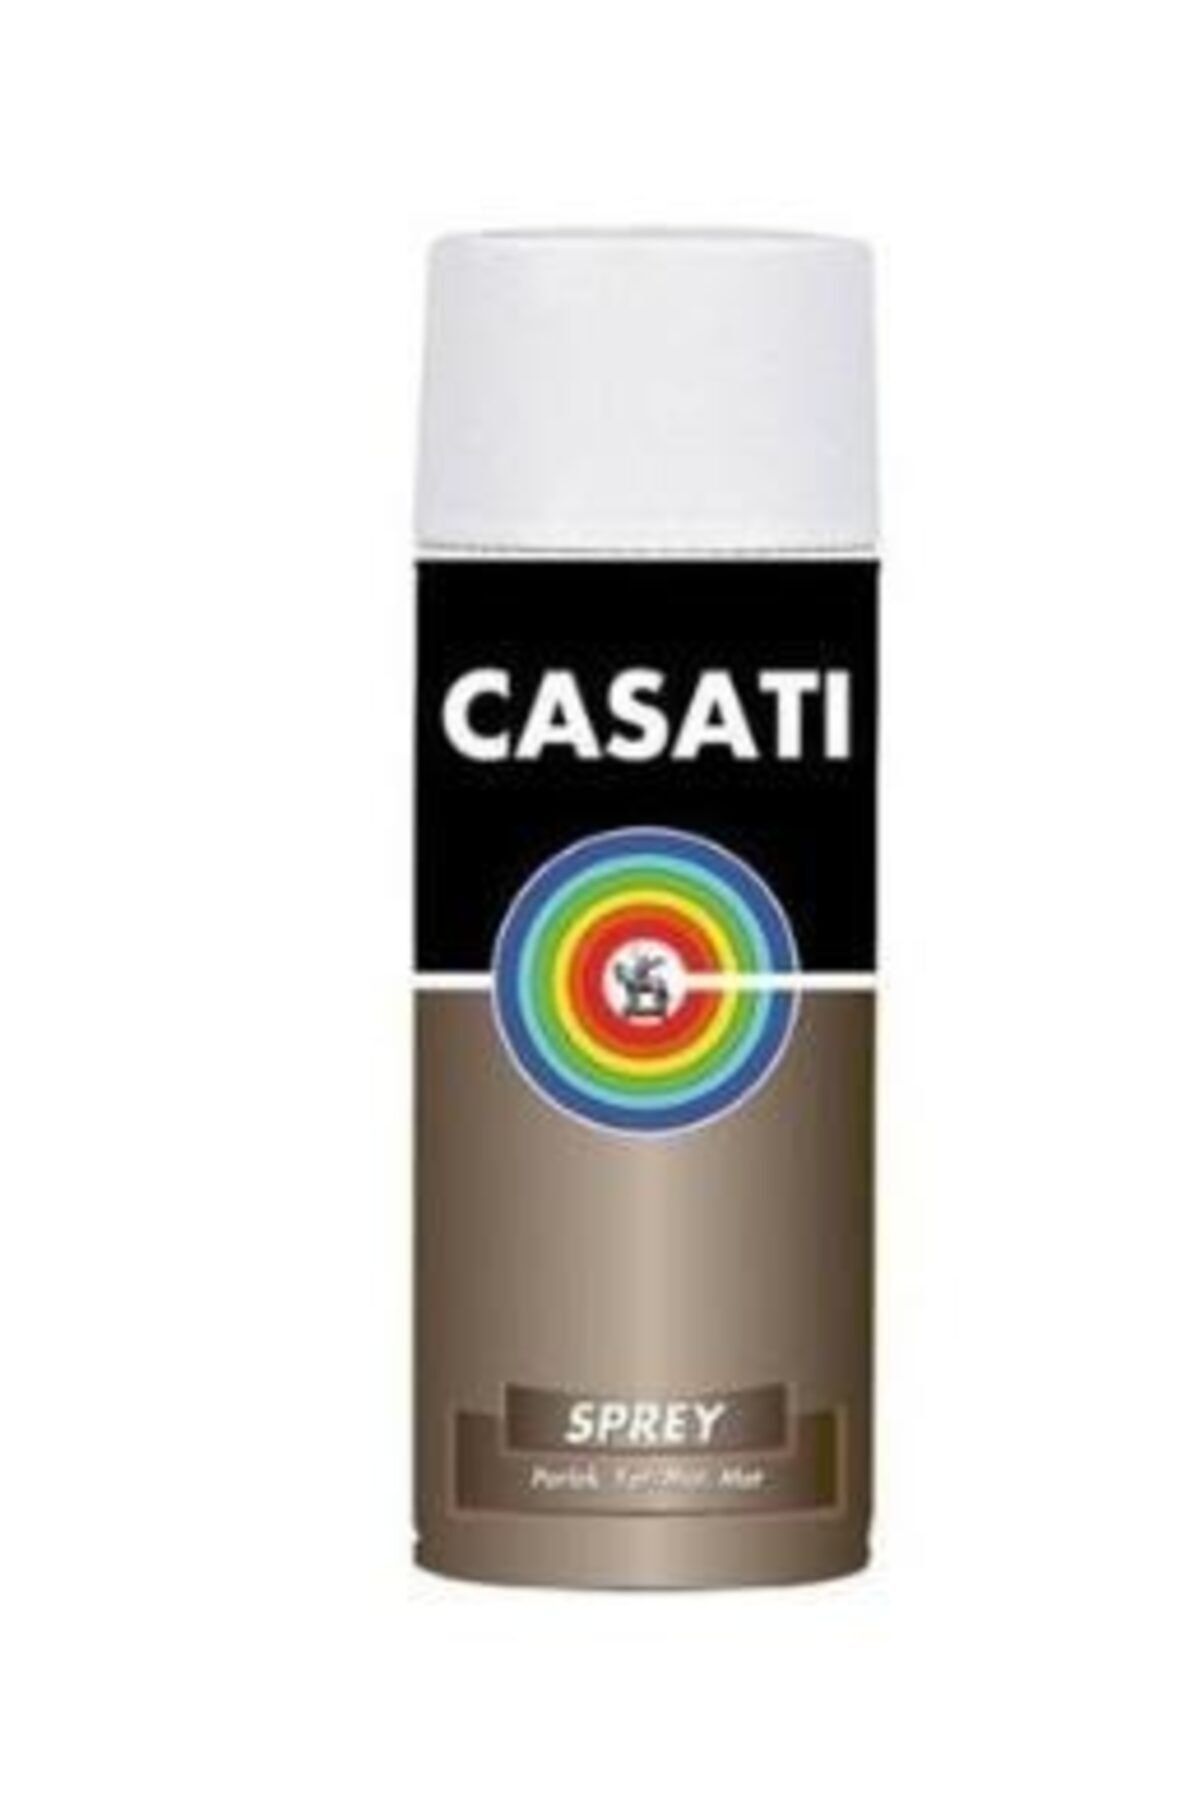 Casati Sprey Boya 400ml - Metalik/floresan Renkler Metalikelektrikmavi